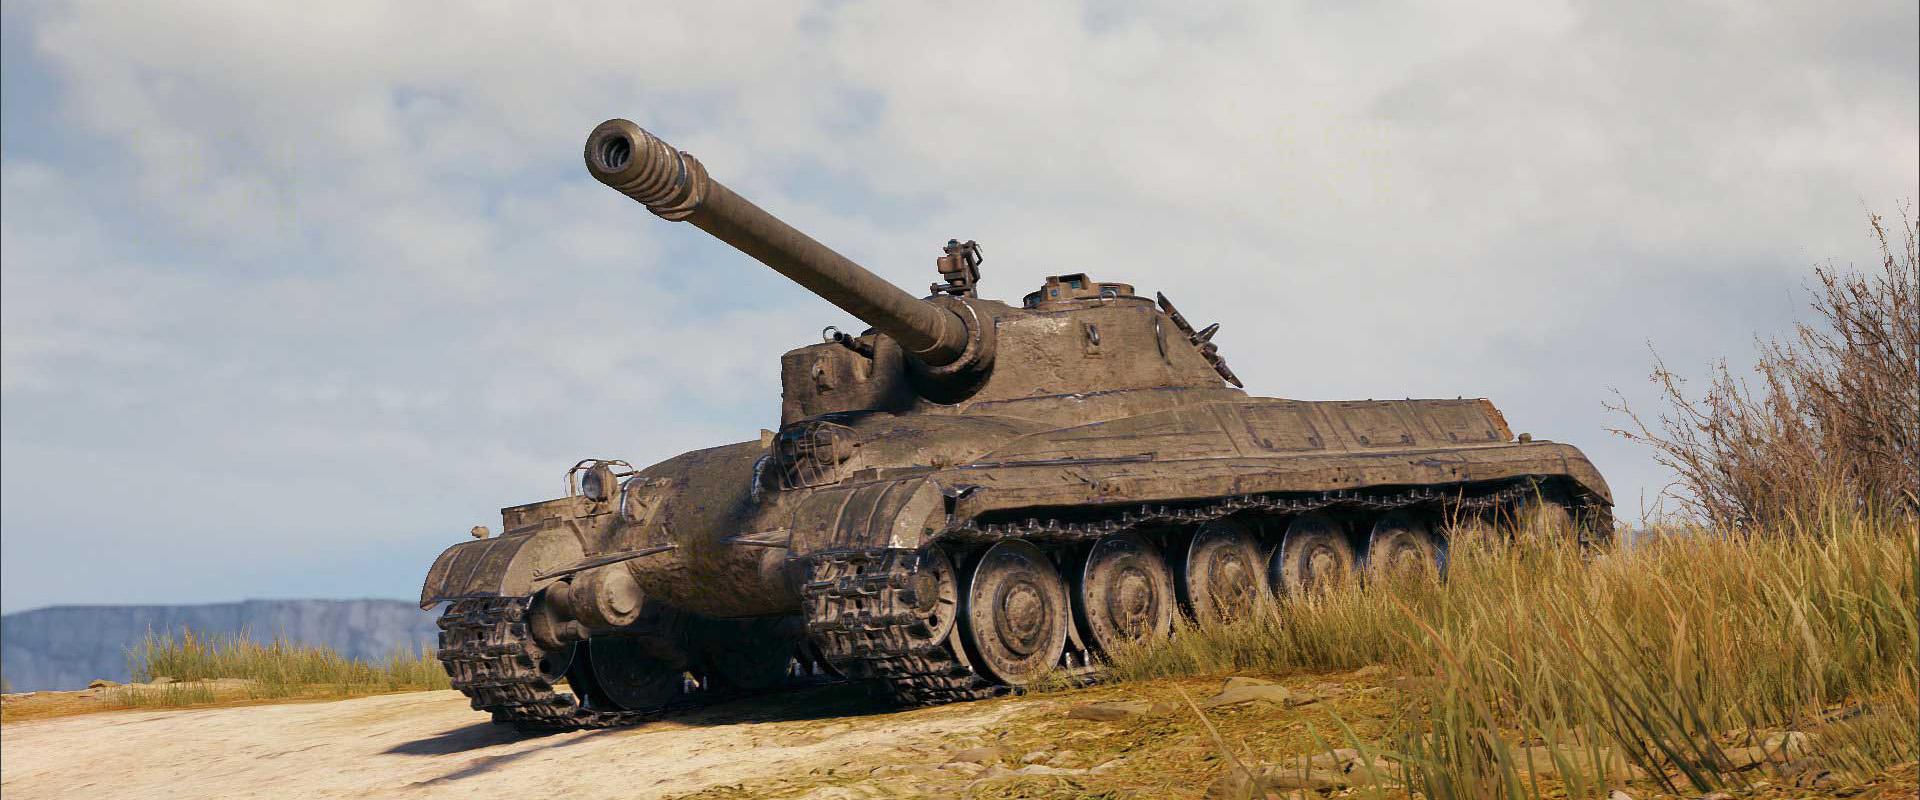 Nem szokványos szovjet nehéz tank: Object 752 bemutató